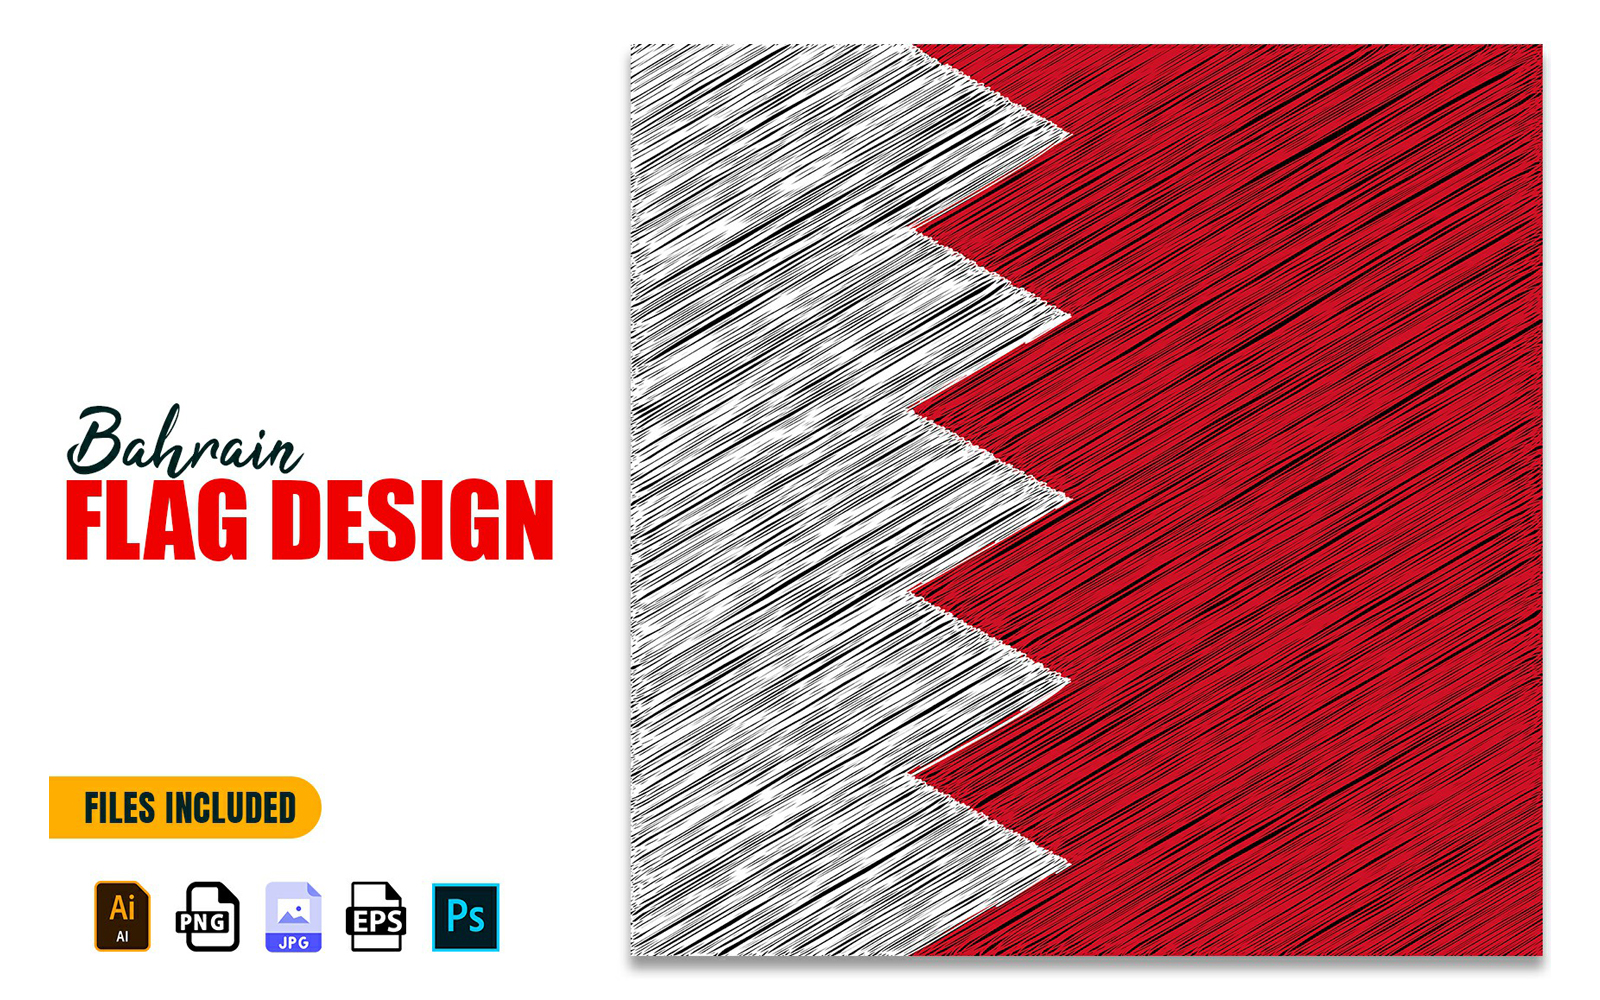 16 December Bahrain Independence Day Flag Design Illustration